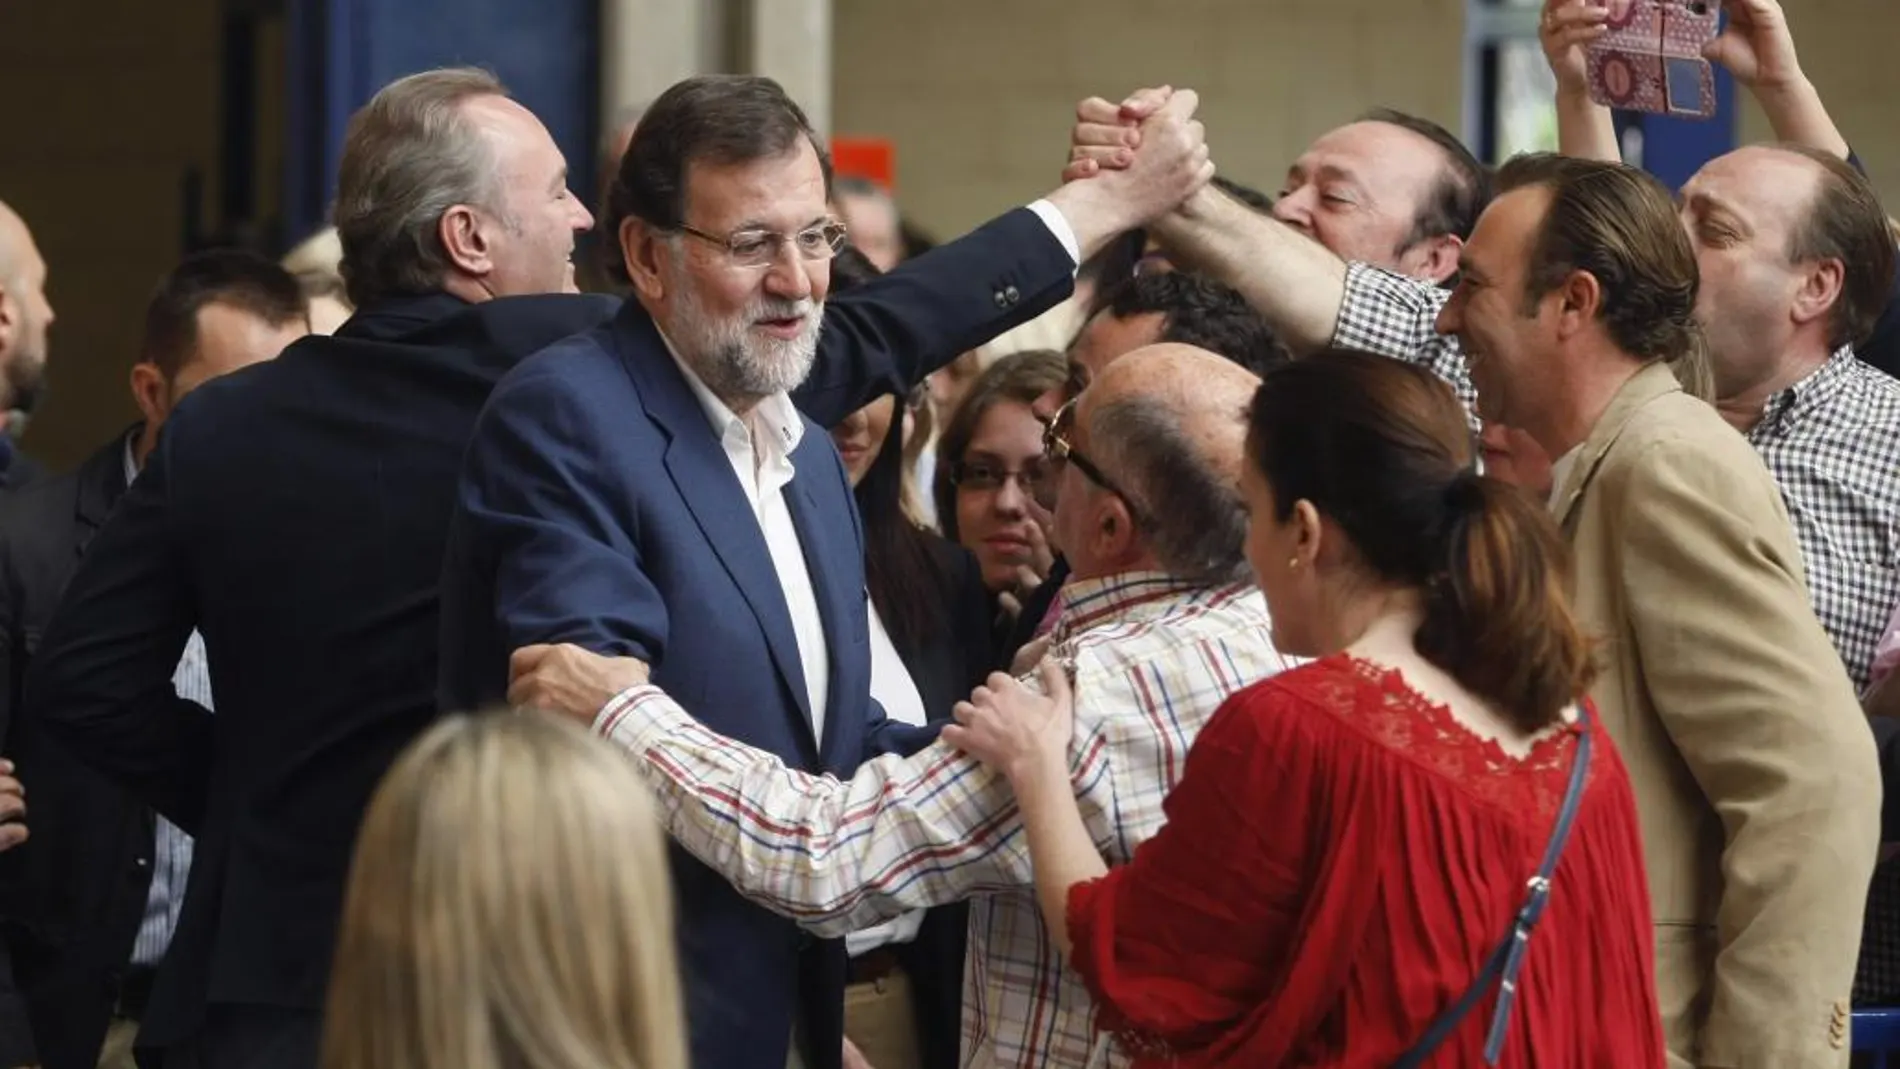 El presidente del Gobierno y del PP, Mariano Rajoy (c), y el presidente de la Generalitat Alberto Fabra (i), saludan a los asistentes al acto de presentación de los candidatos populares a los Ayuntamientos de la provincia de Alicante